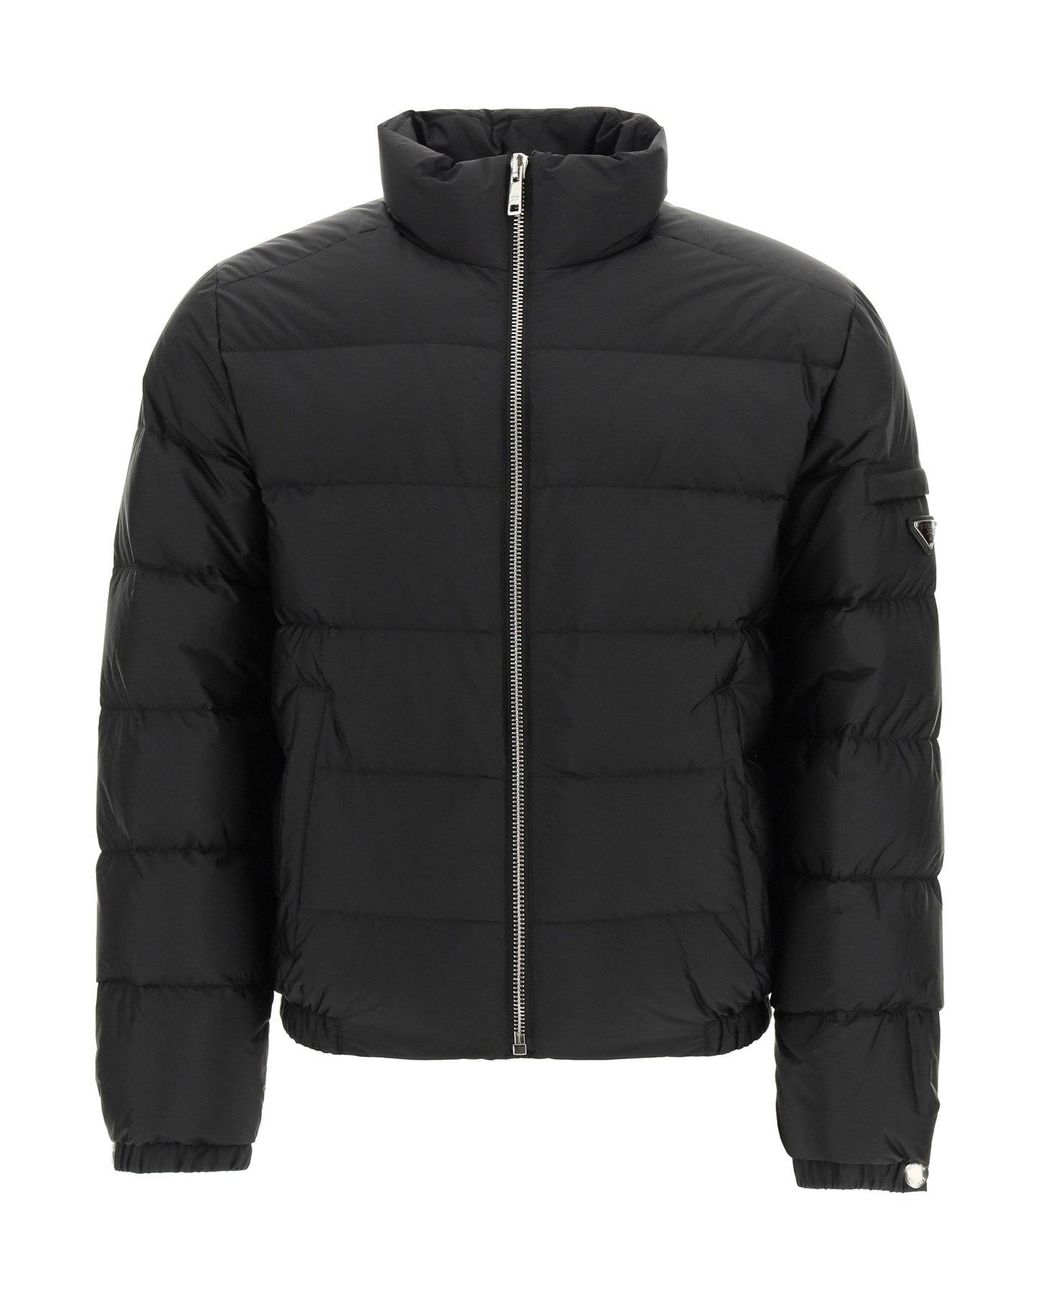 Prada Synthetic Re-nylon Short Puffer Jacket in Black for Men - Lyst